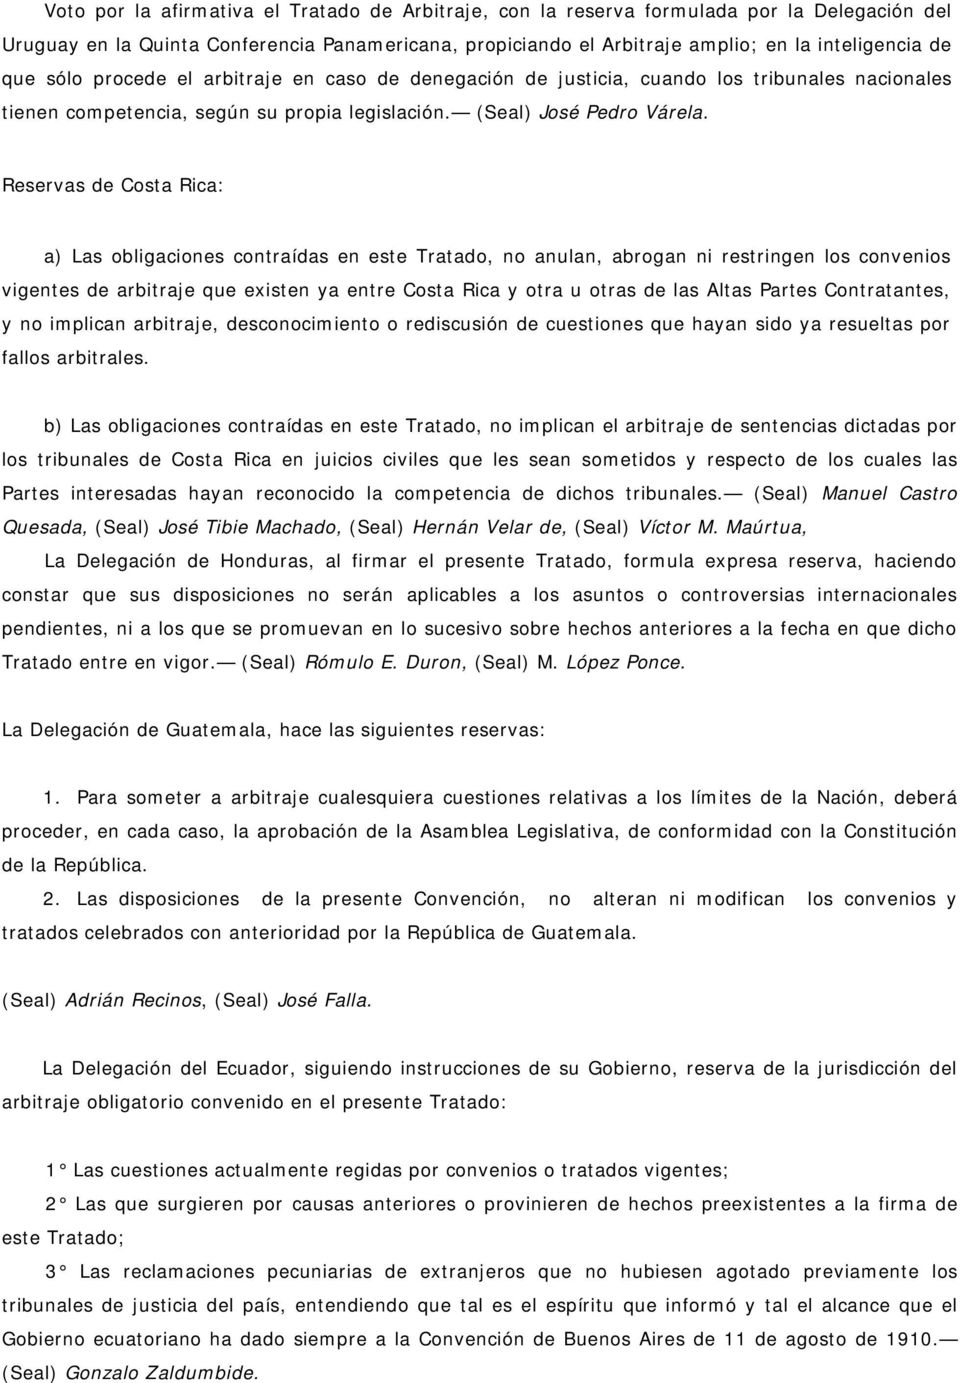 Reservas de Costa Rica: a) Las obligaciones contraídas en este Tratado, no anulan, abrogan ni restringen los convenios vigentes de arbitraje que existen ya entre Costa Rica y otra u otras de las